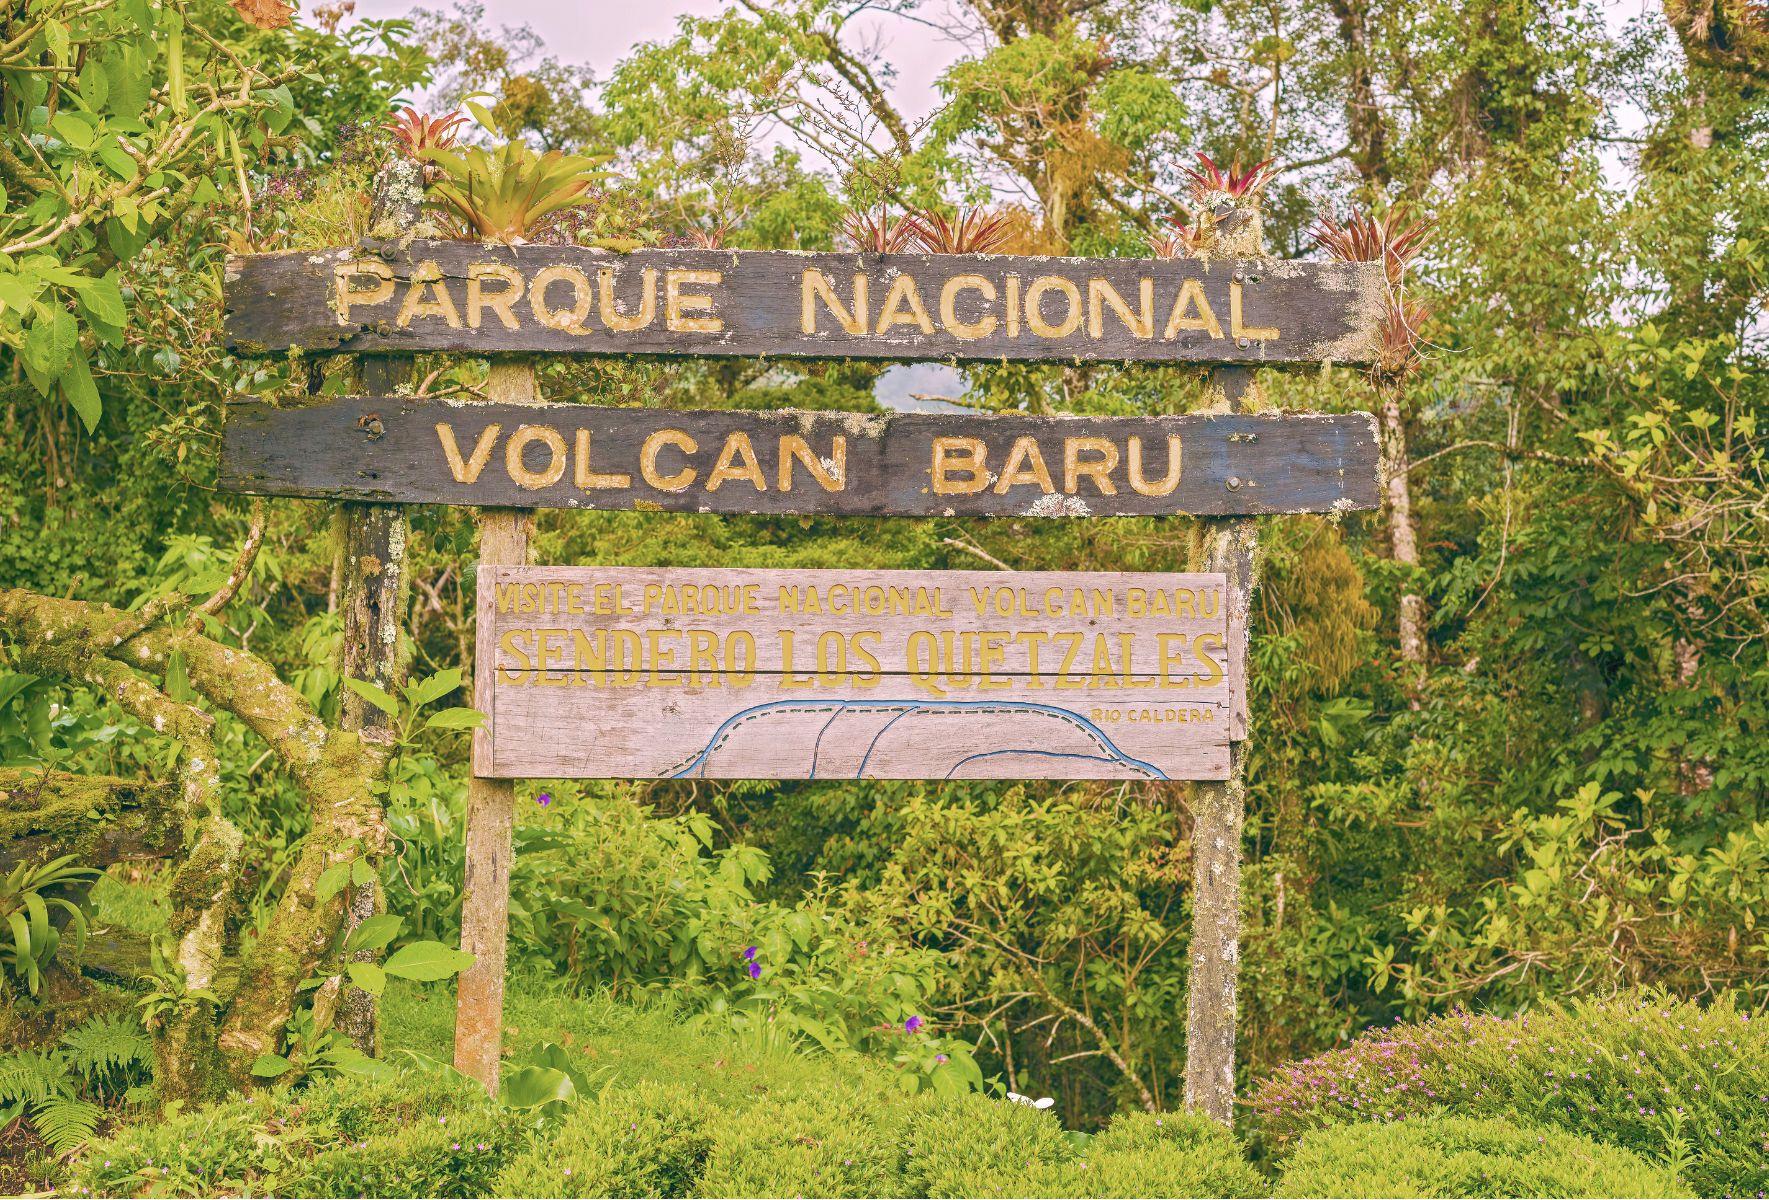 Consejo de Asuntos Ambientales instruye a SALA para la apertura de expediente de hechos por posible falta en la aplicación de la legislación ambiental dentro del Parque Nacional Volcán Barú.